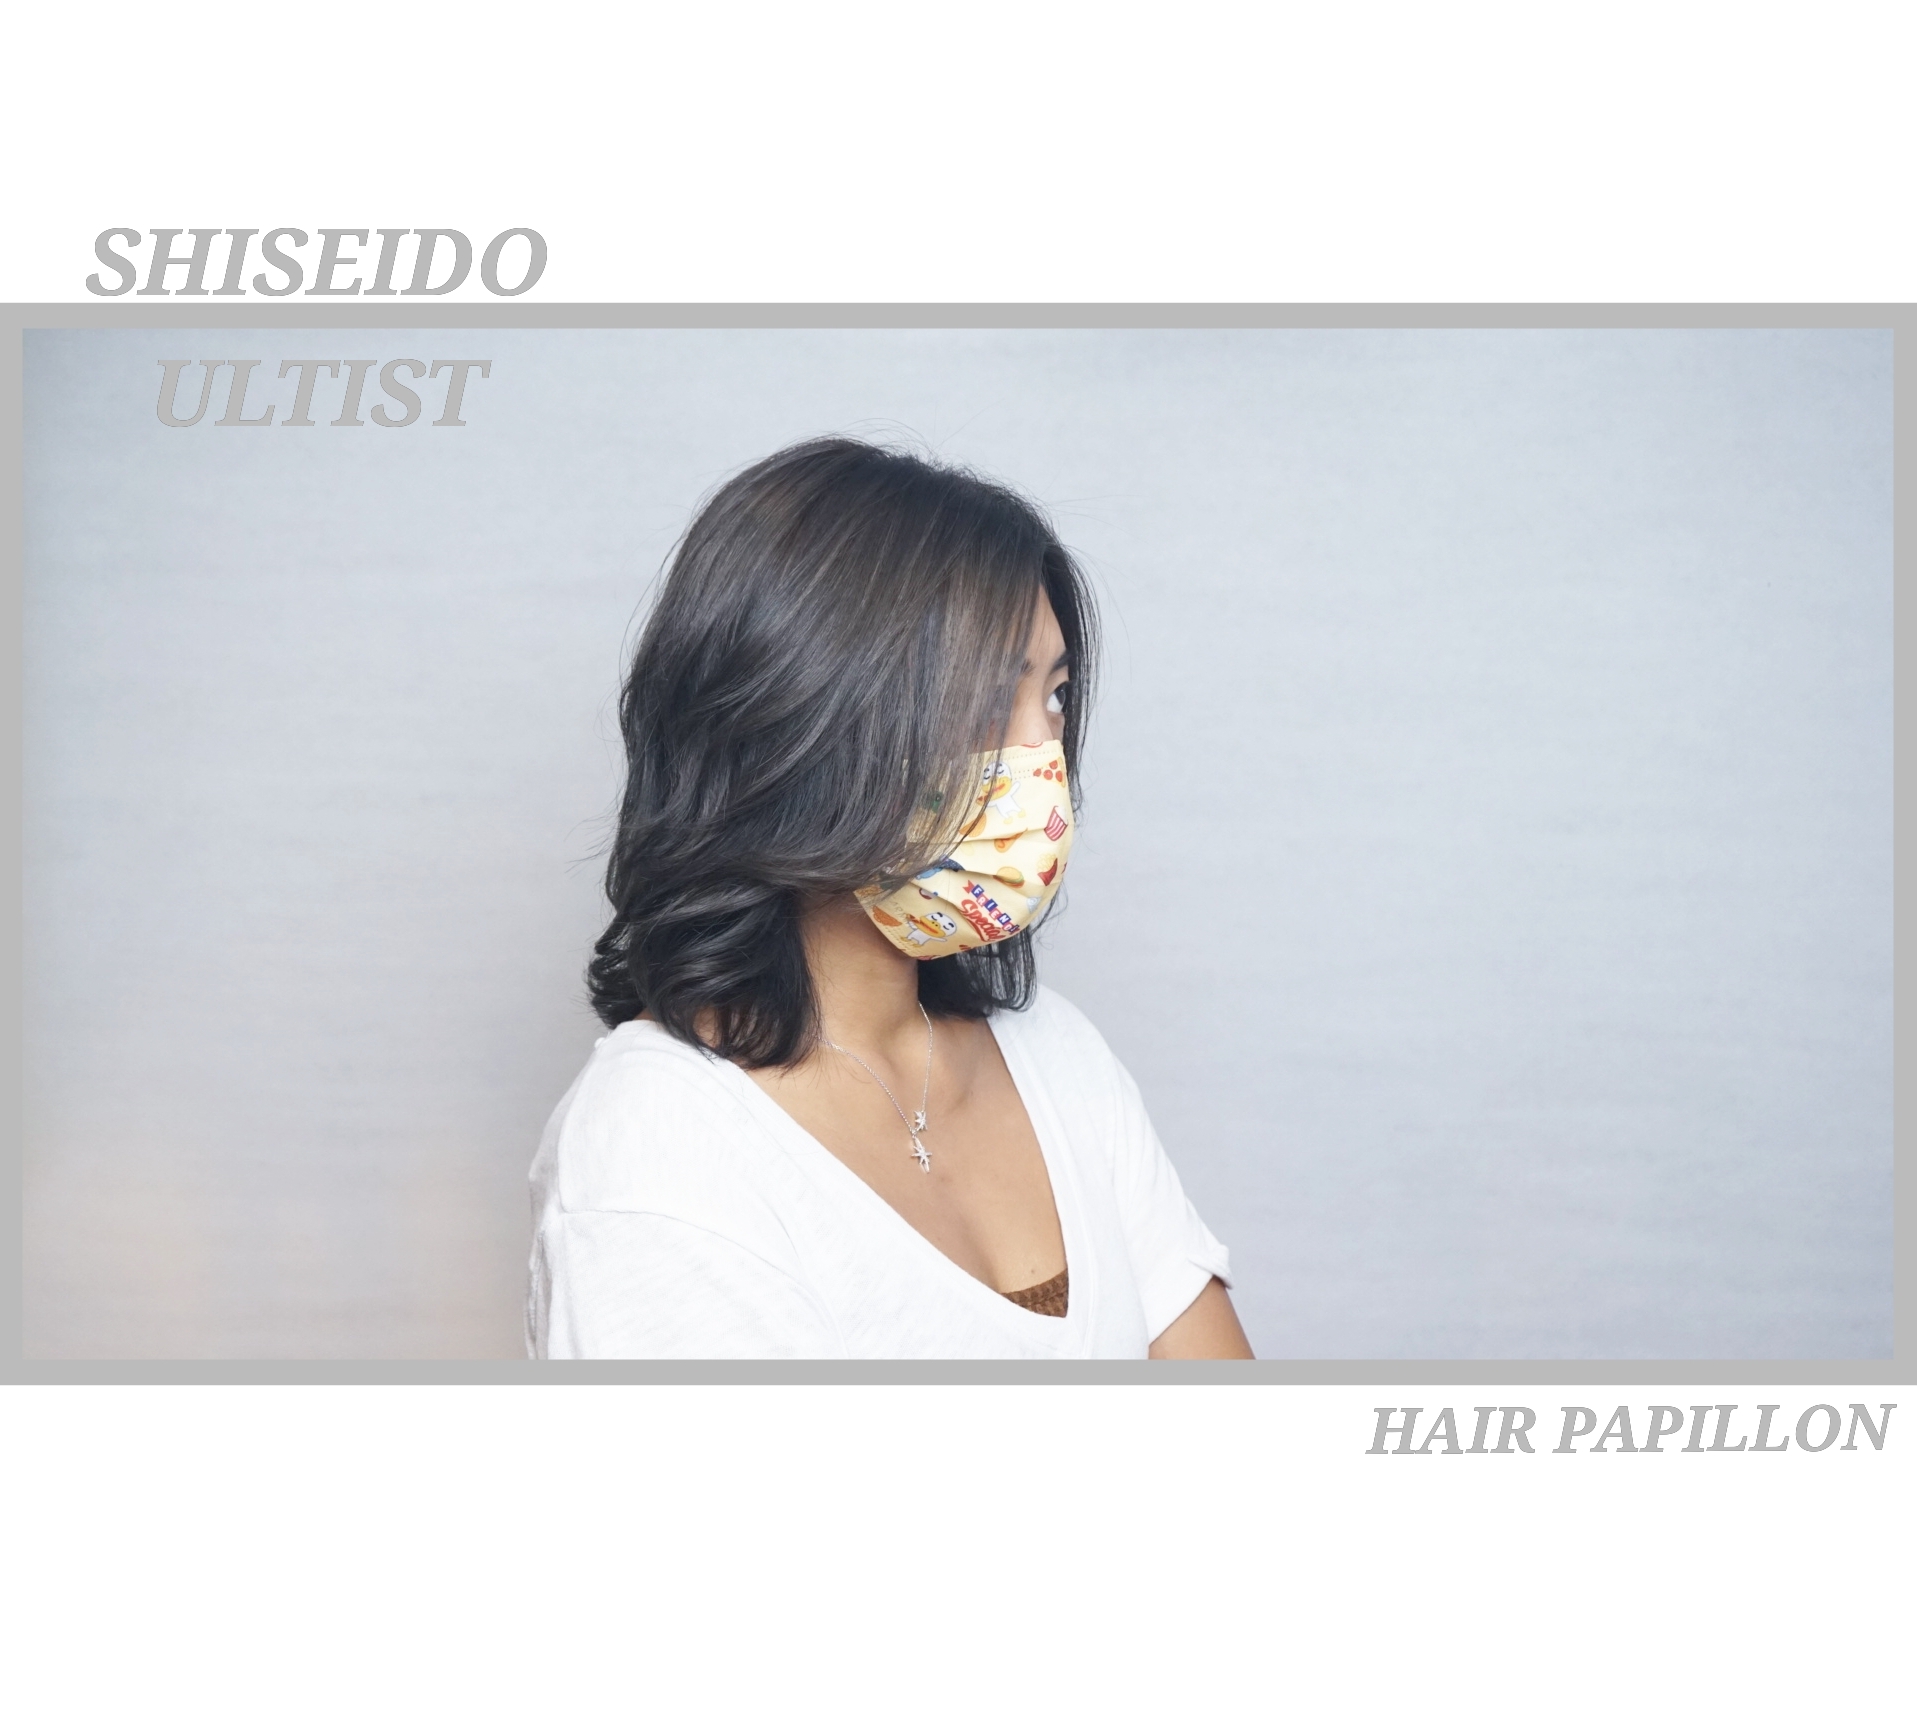 作品参考 / 最新消息:shiseido ultist